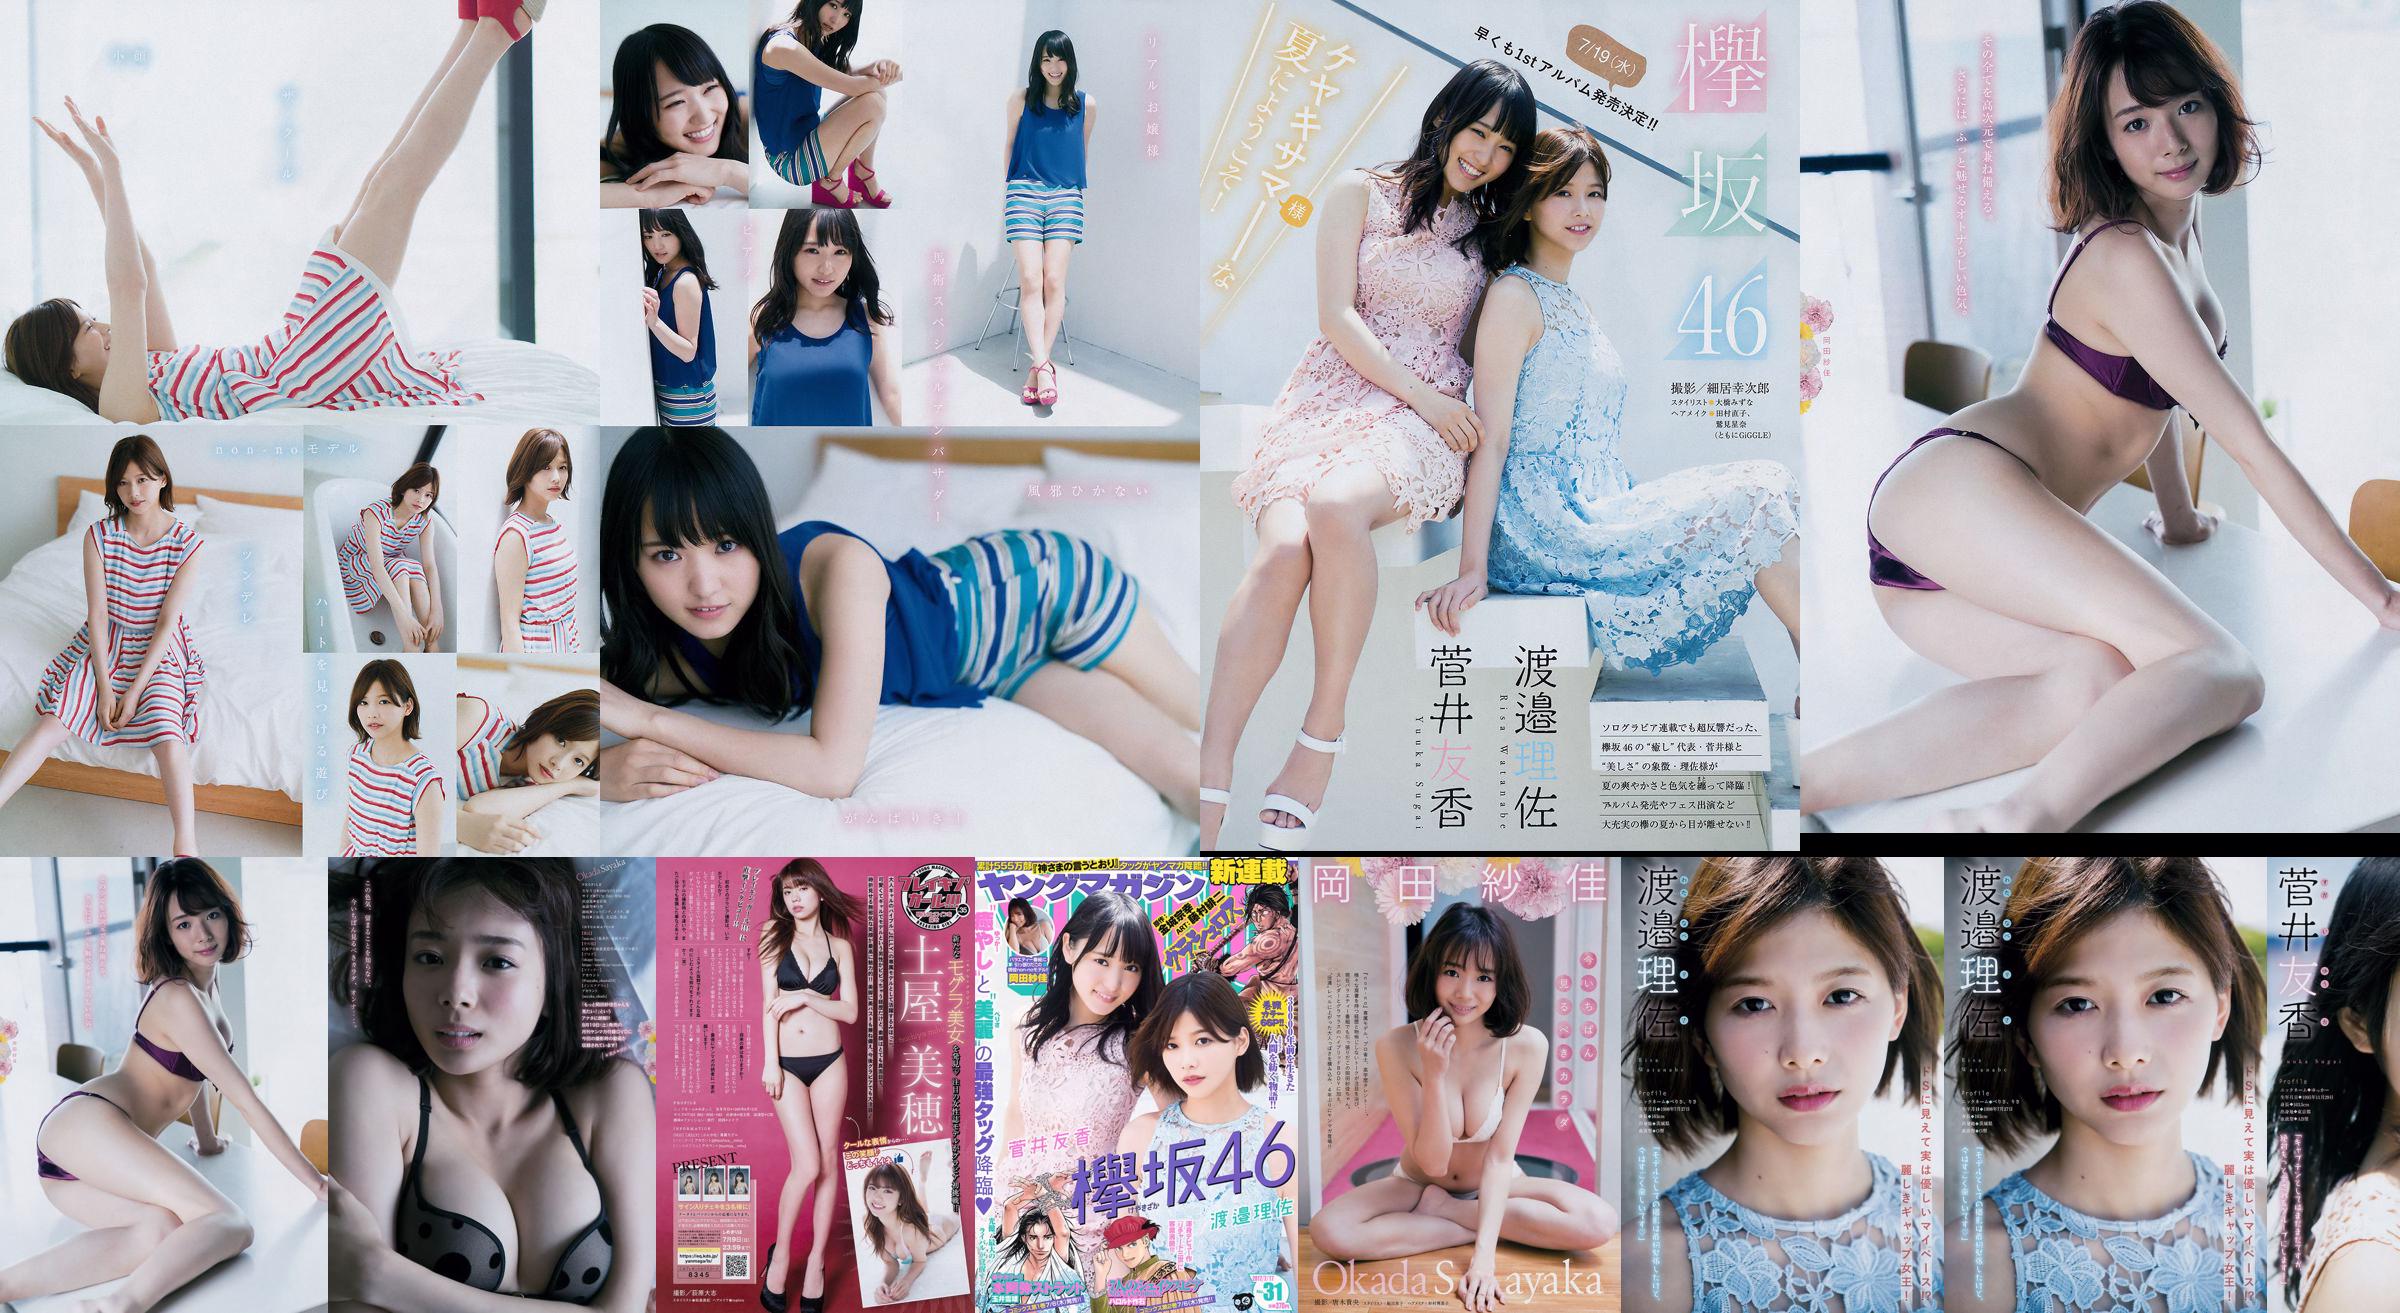 [Revista joven] Watanabe Risa, Sugai Yuka, Okada Saika 2017 No 31 Revista fotográfica No.2a61ec Página 1